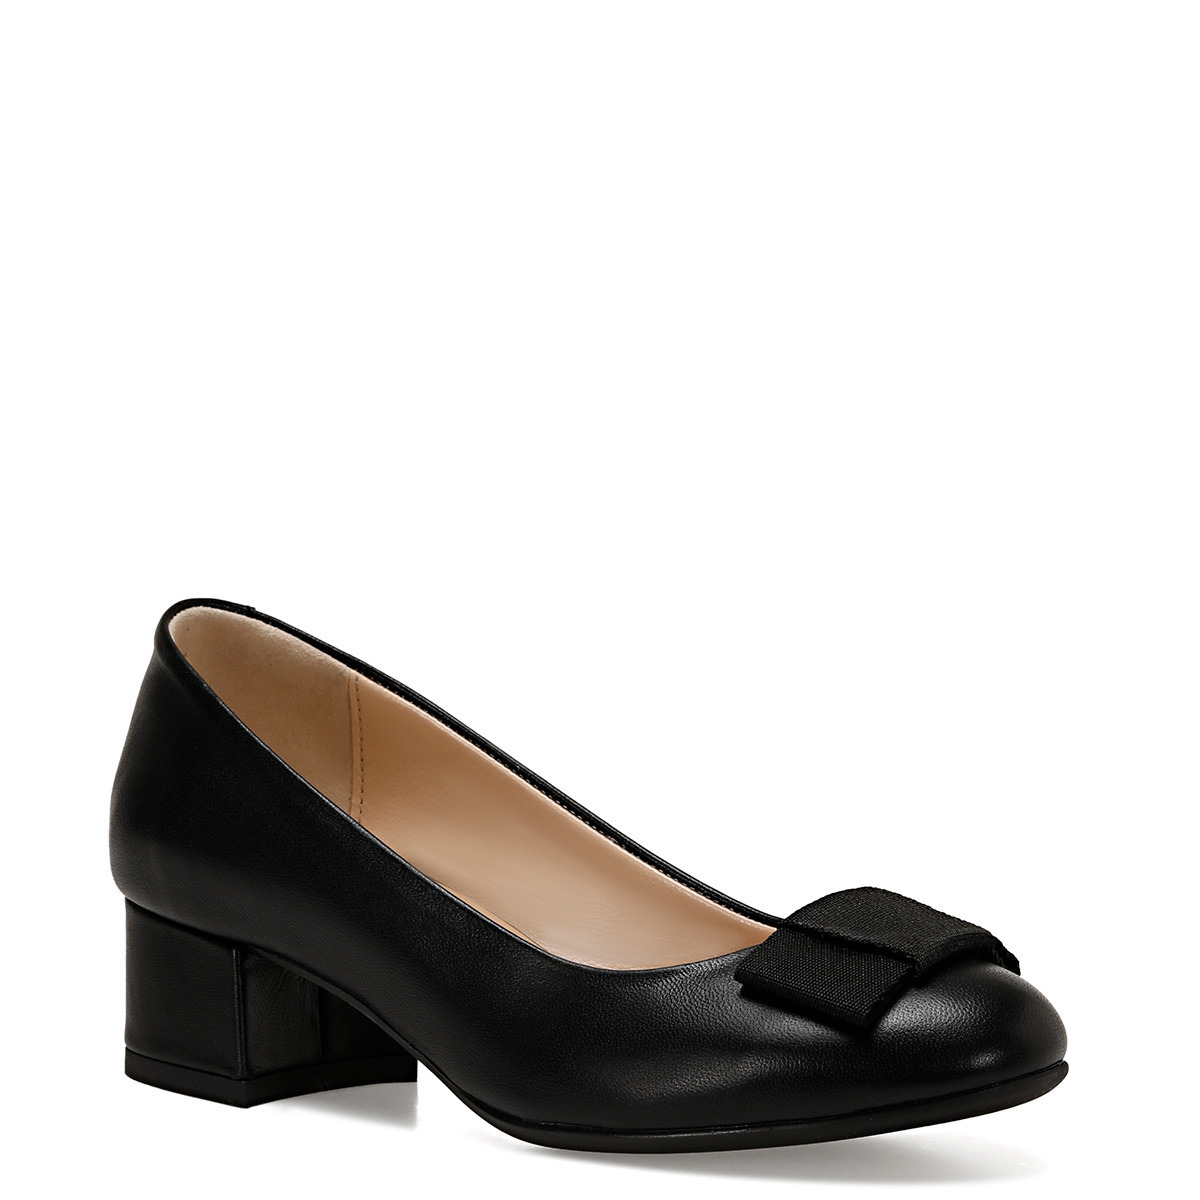 Flo LENI Siyah Kadın Topuklu Ayakkabı. 3